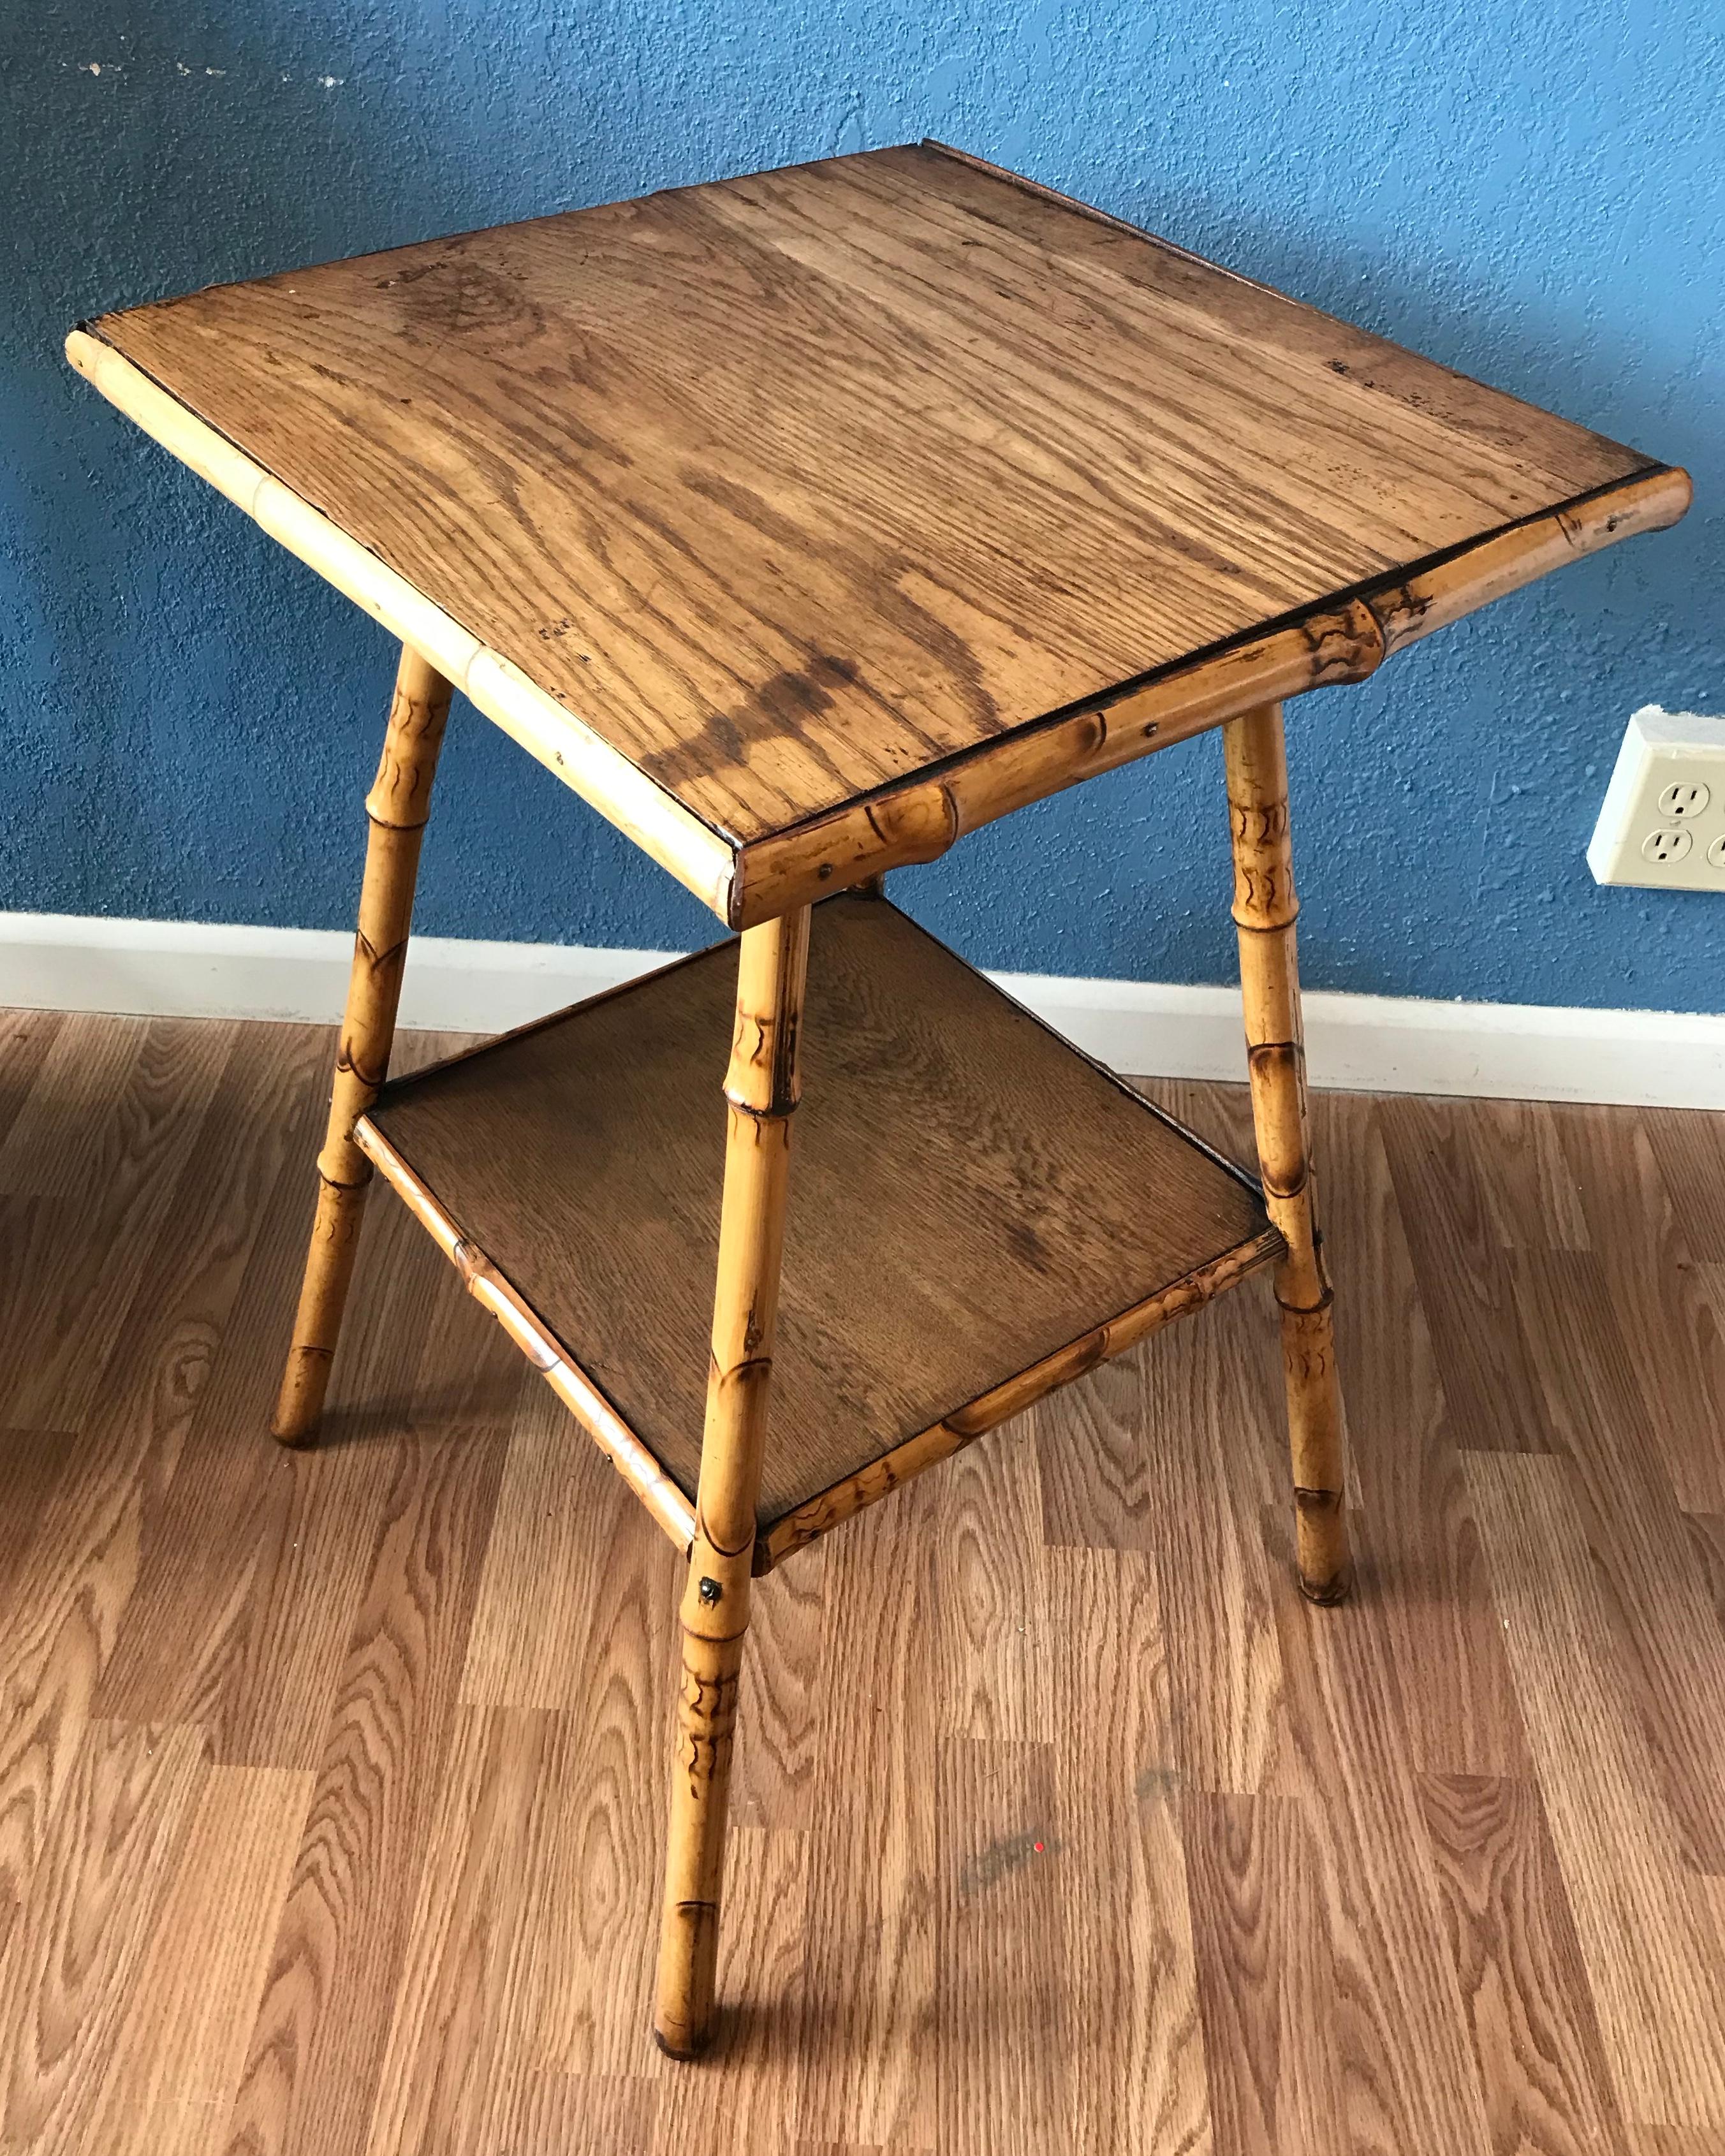 Dieser robuste englische Tisch ist mit
einer Eichenholzplatte und einem entsprechenden Eichenholzboden
regal. Guter Maßstab und gutes Design.